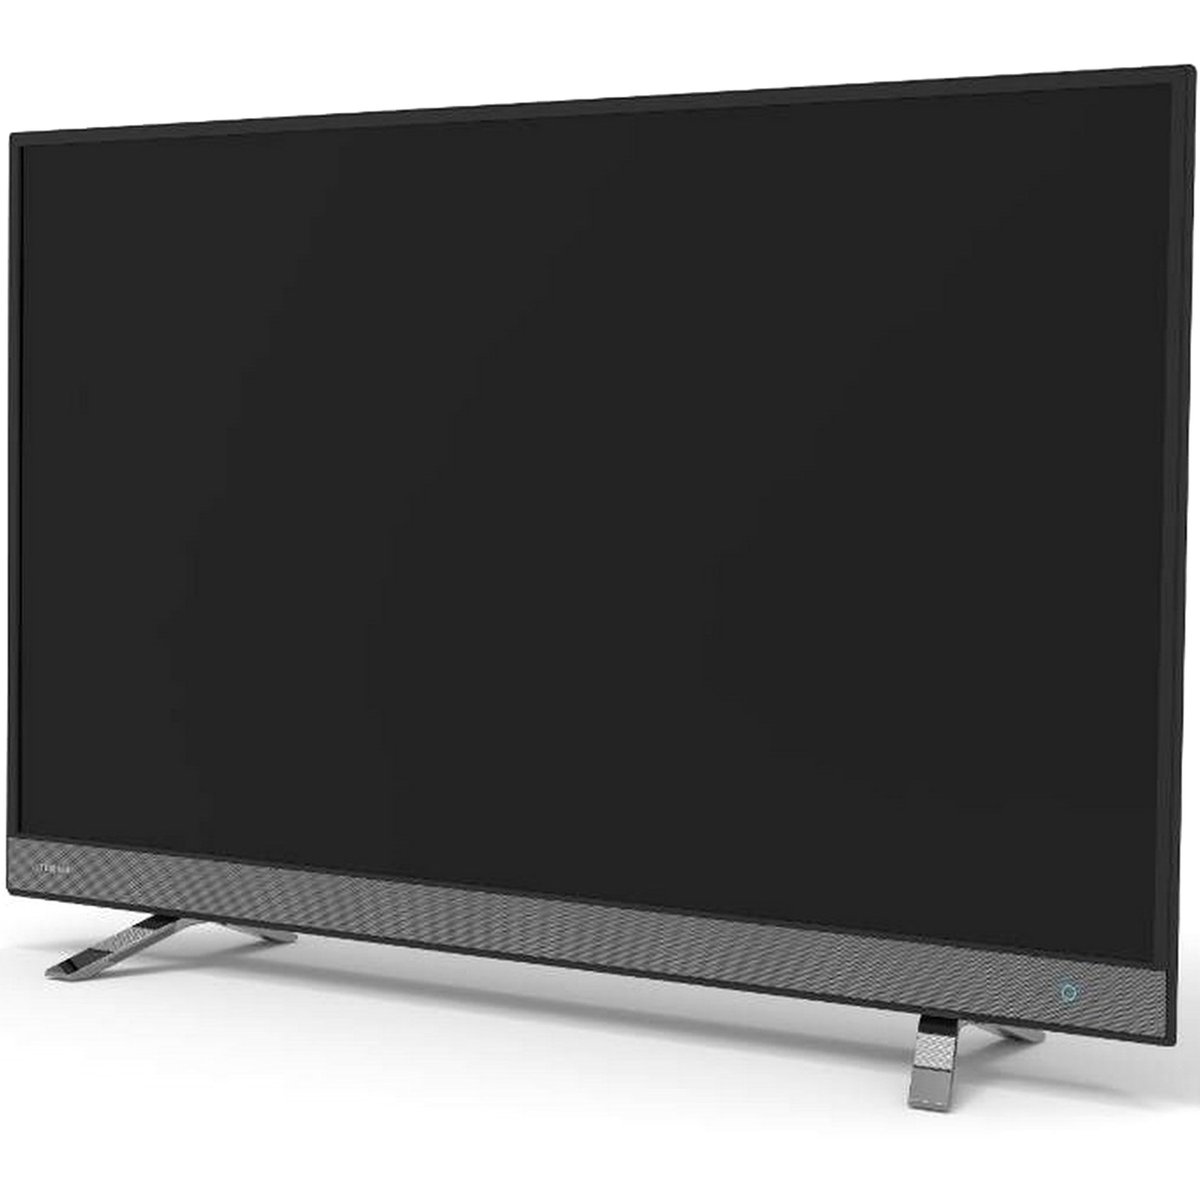 Toshiba Full HD Smart LED TV 55L5750EE 55'